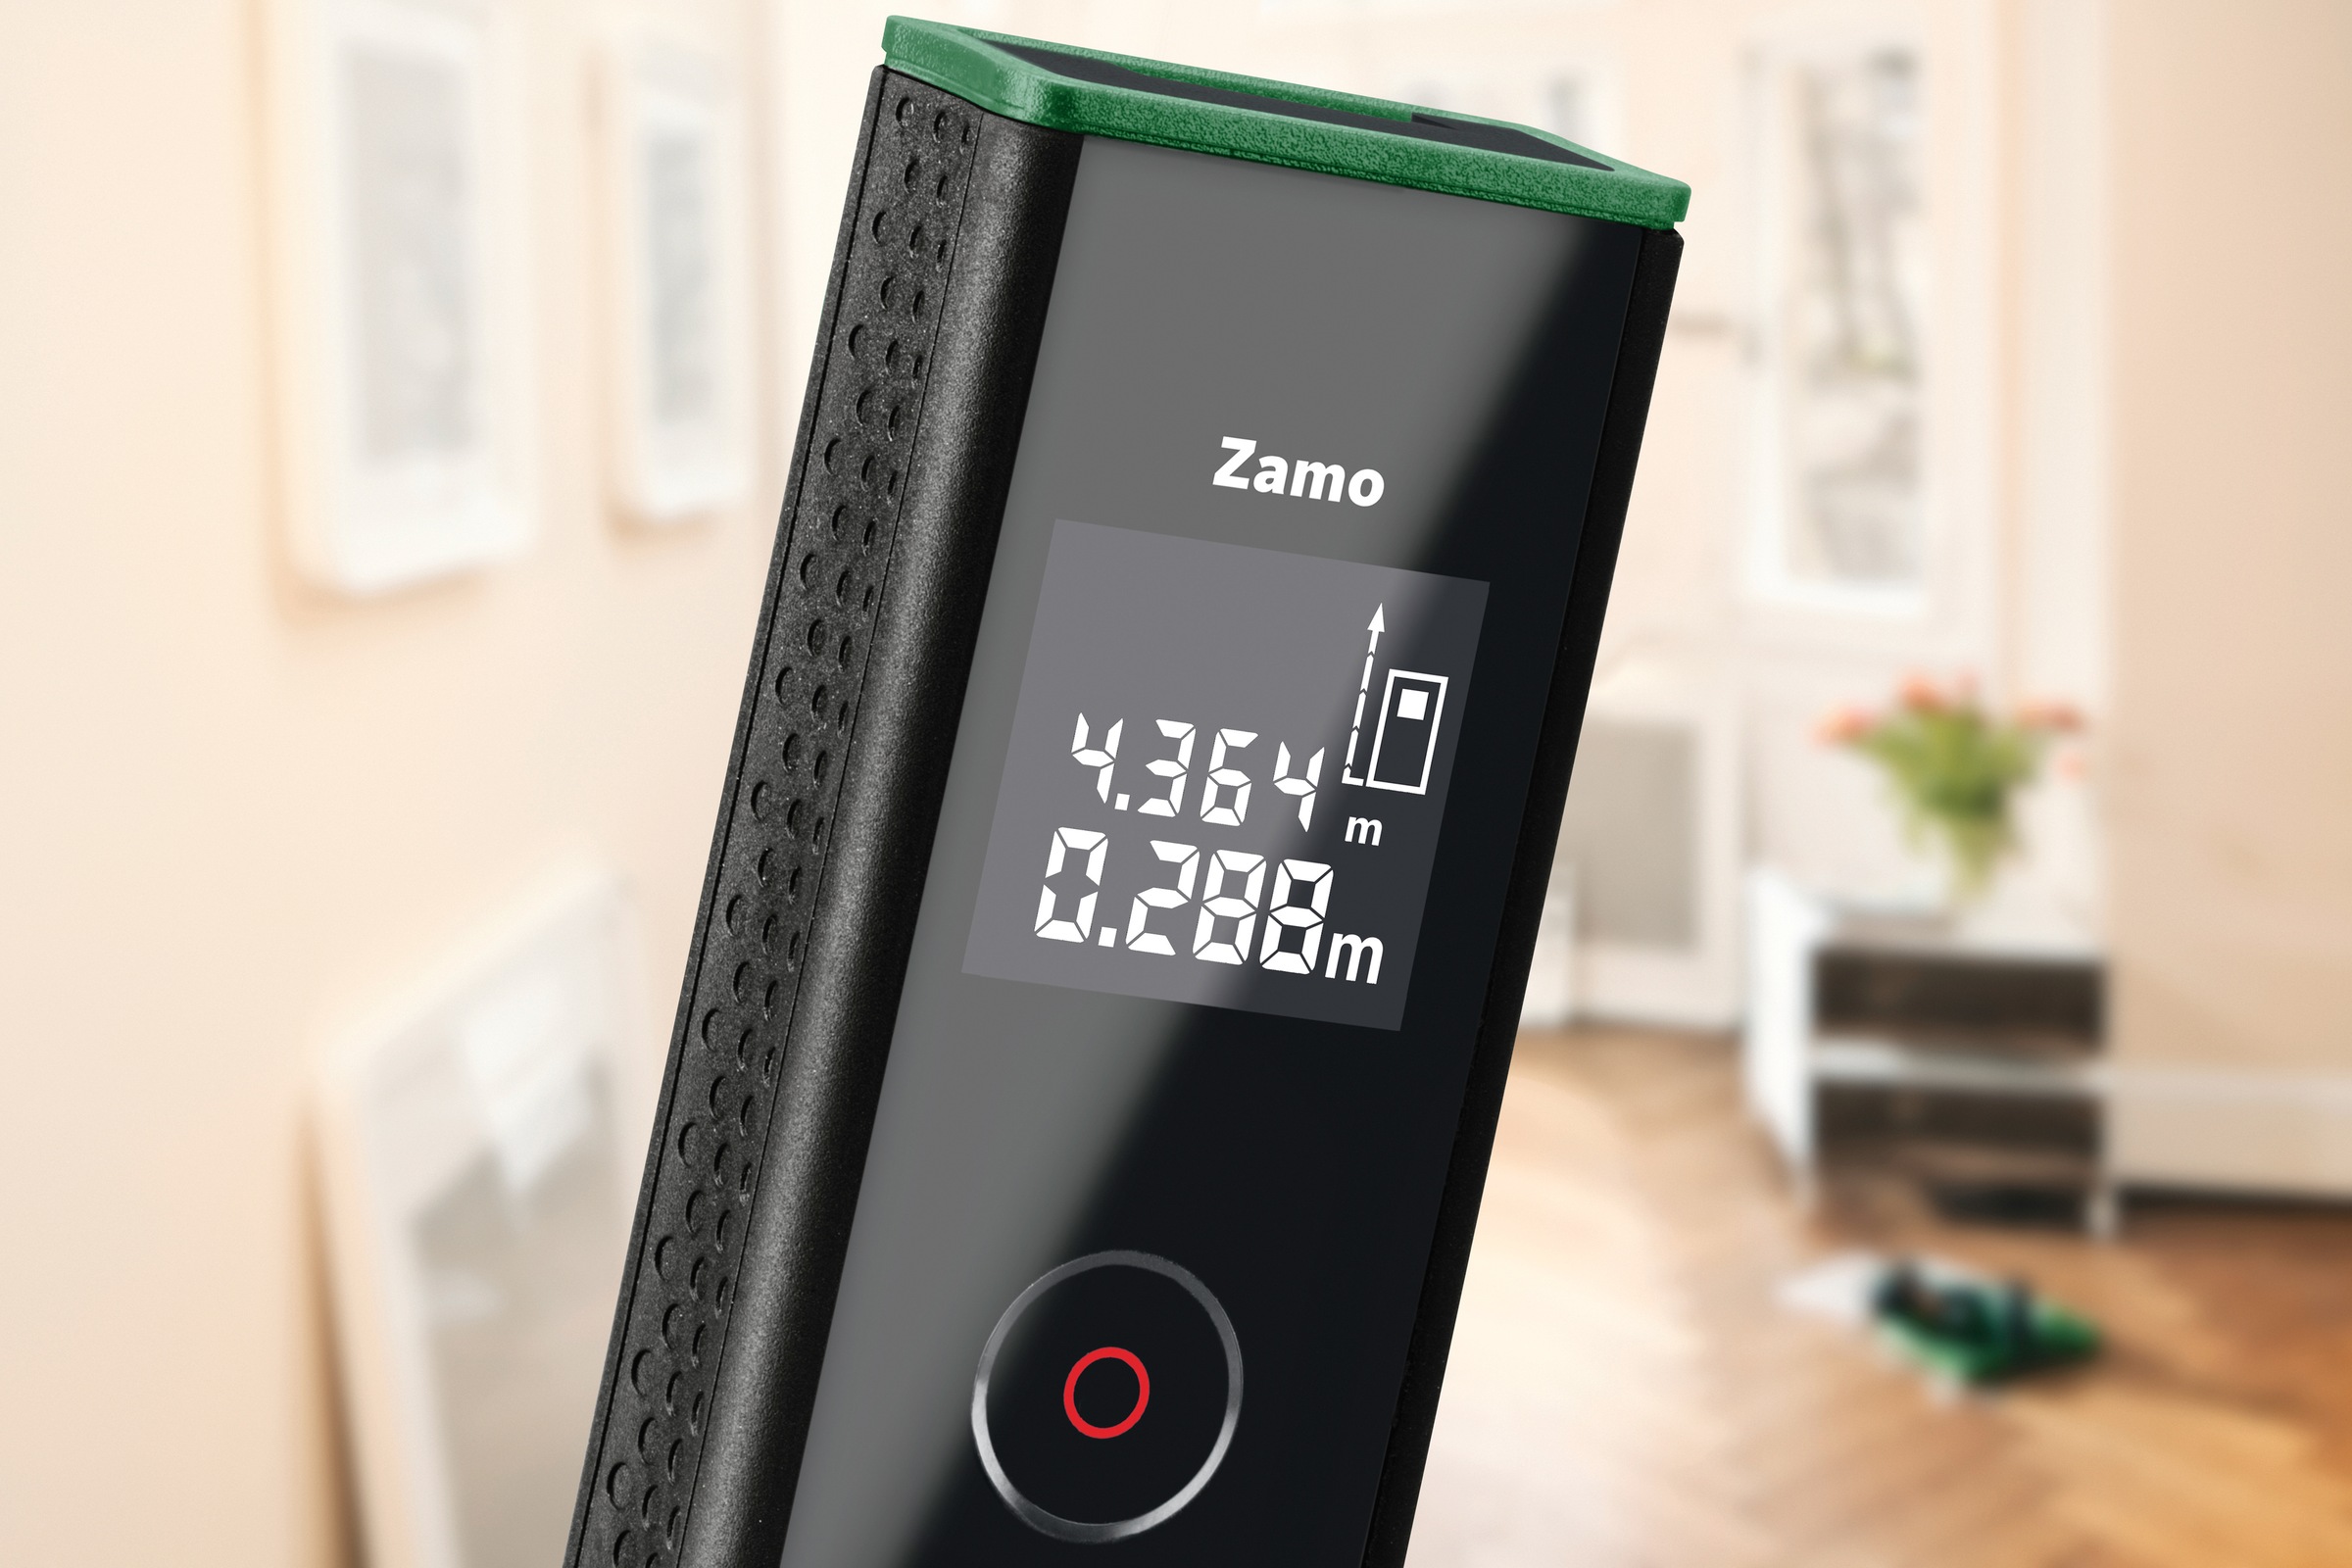 Bosch Home & Garden Entfernungsmesser »Zamo III«